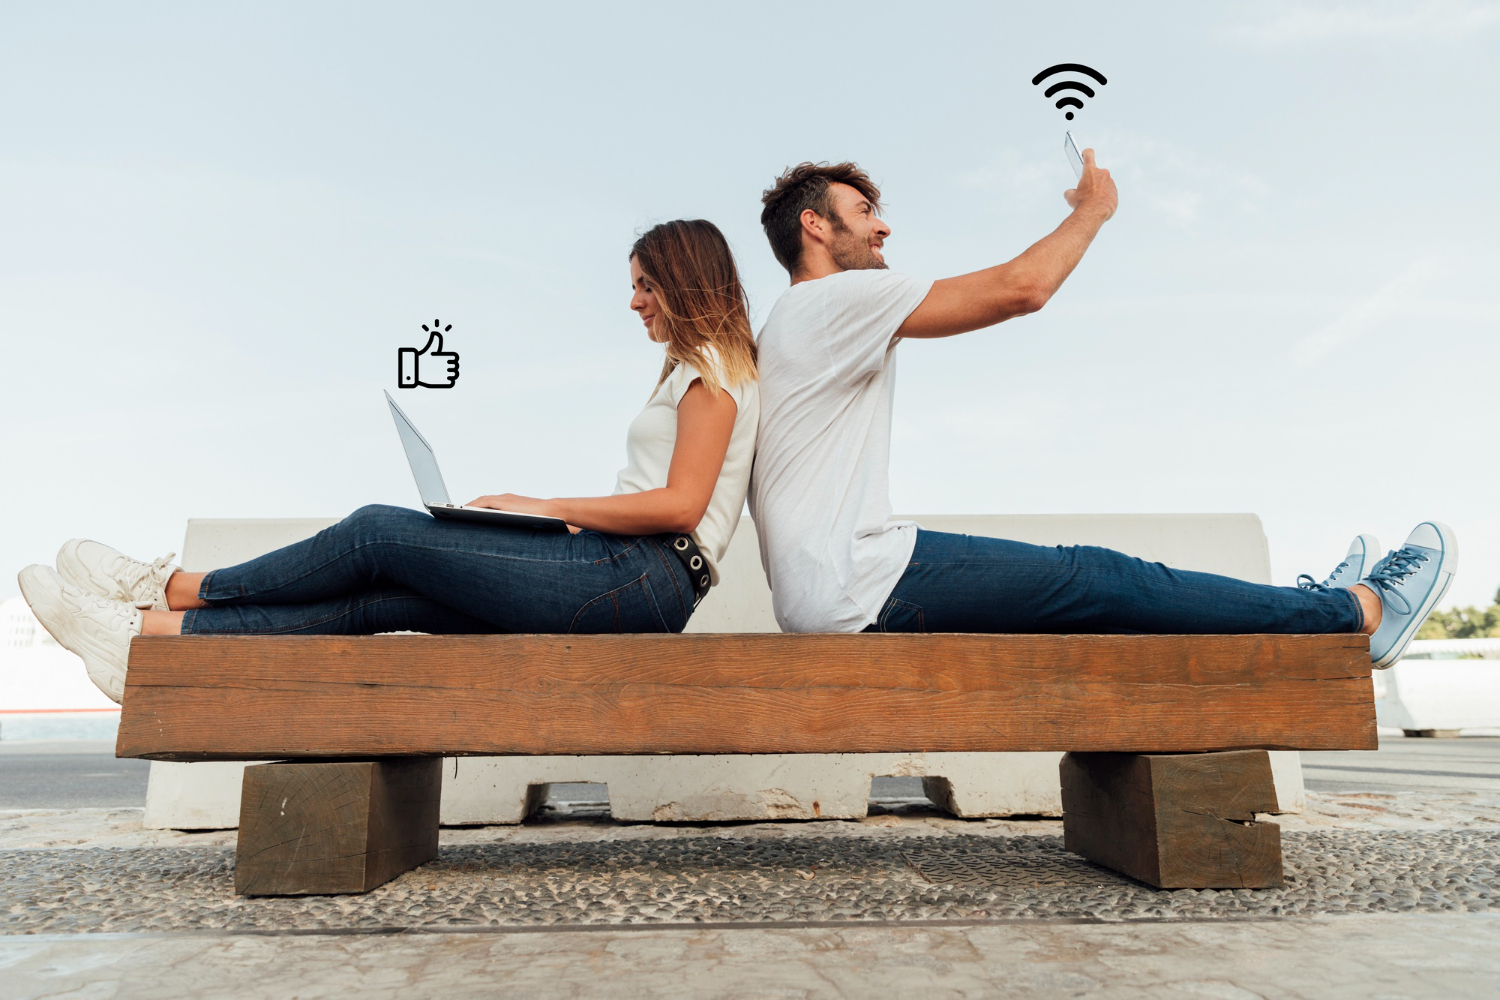 Aprenda como aumentar o sinal do wi-fi e ter uma conexão melhor